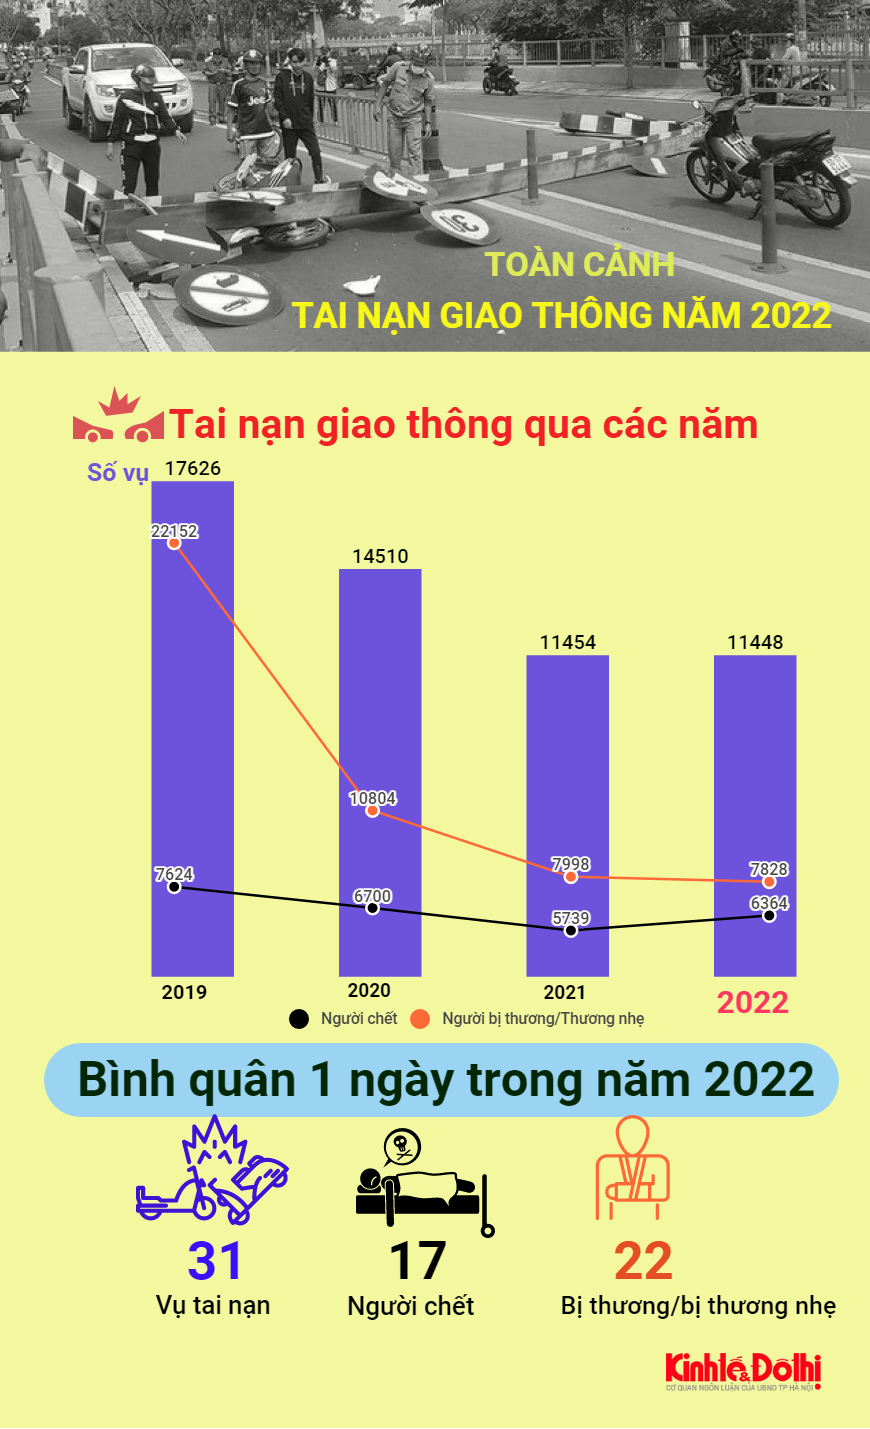 Toàn cảnh tai nạn giao thông năm 2022 tại Việt Nam - Ảnh 1